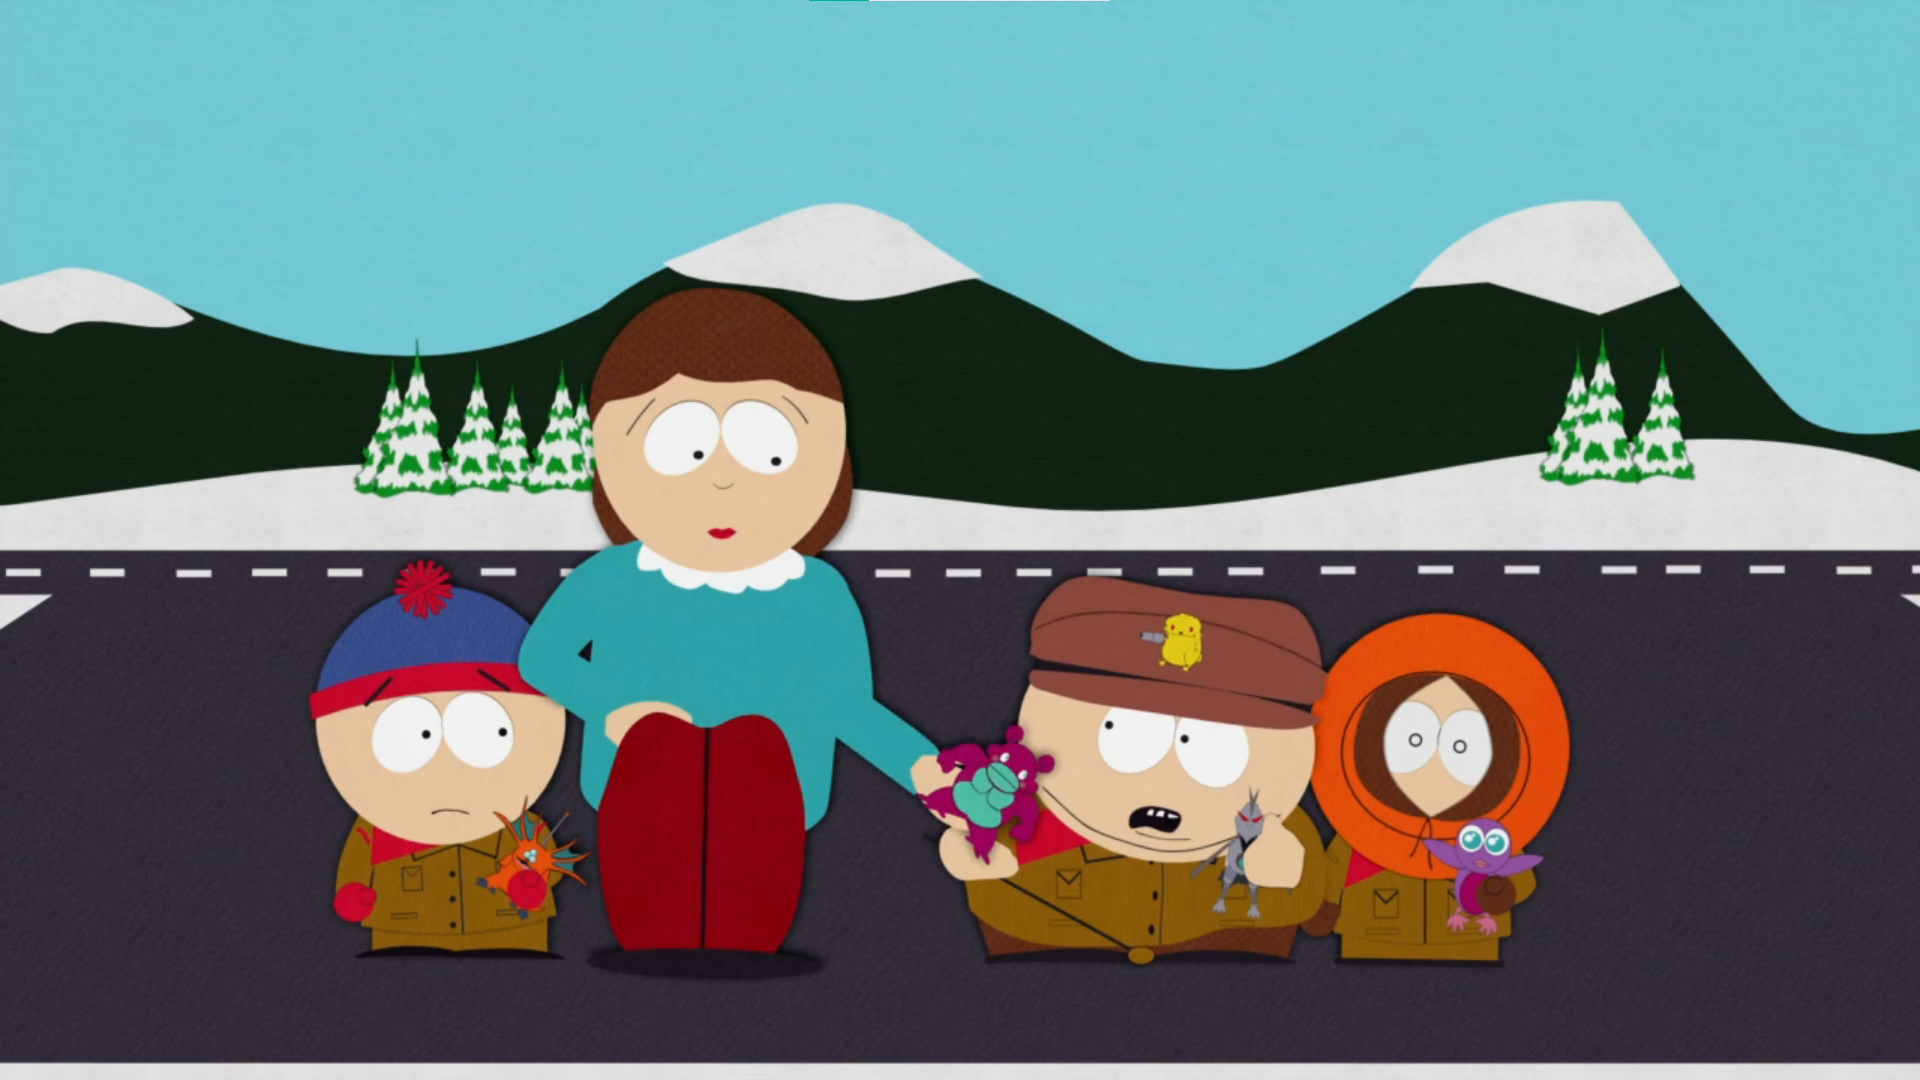 South Park Co-Creator Trey Parker's Hilltop Retreat in Colorado